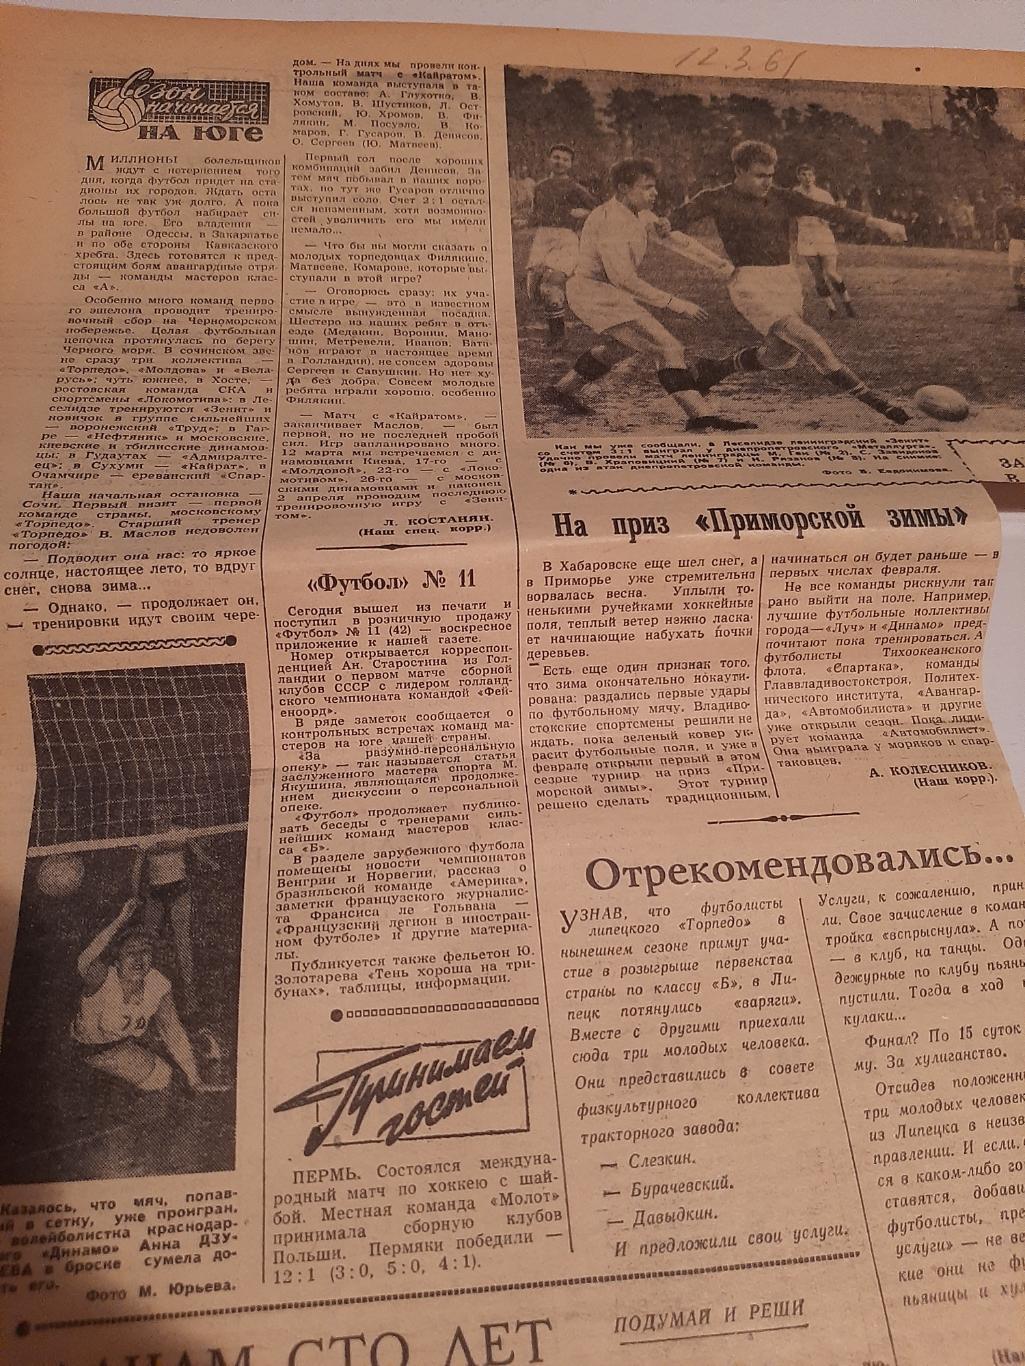 Заметка из газеты Советский спорт. Статья Торпедо - Зенит Липецк 12.03.1961